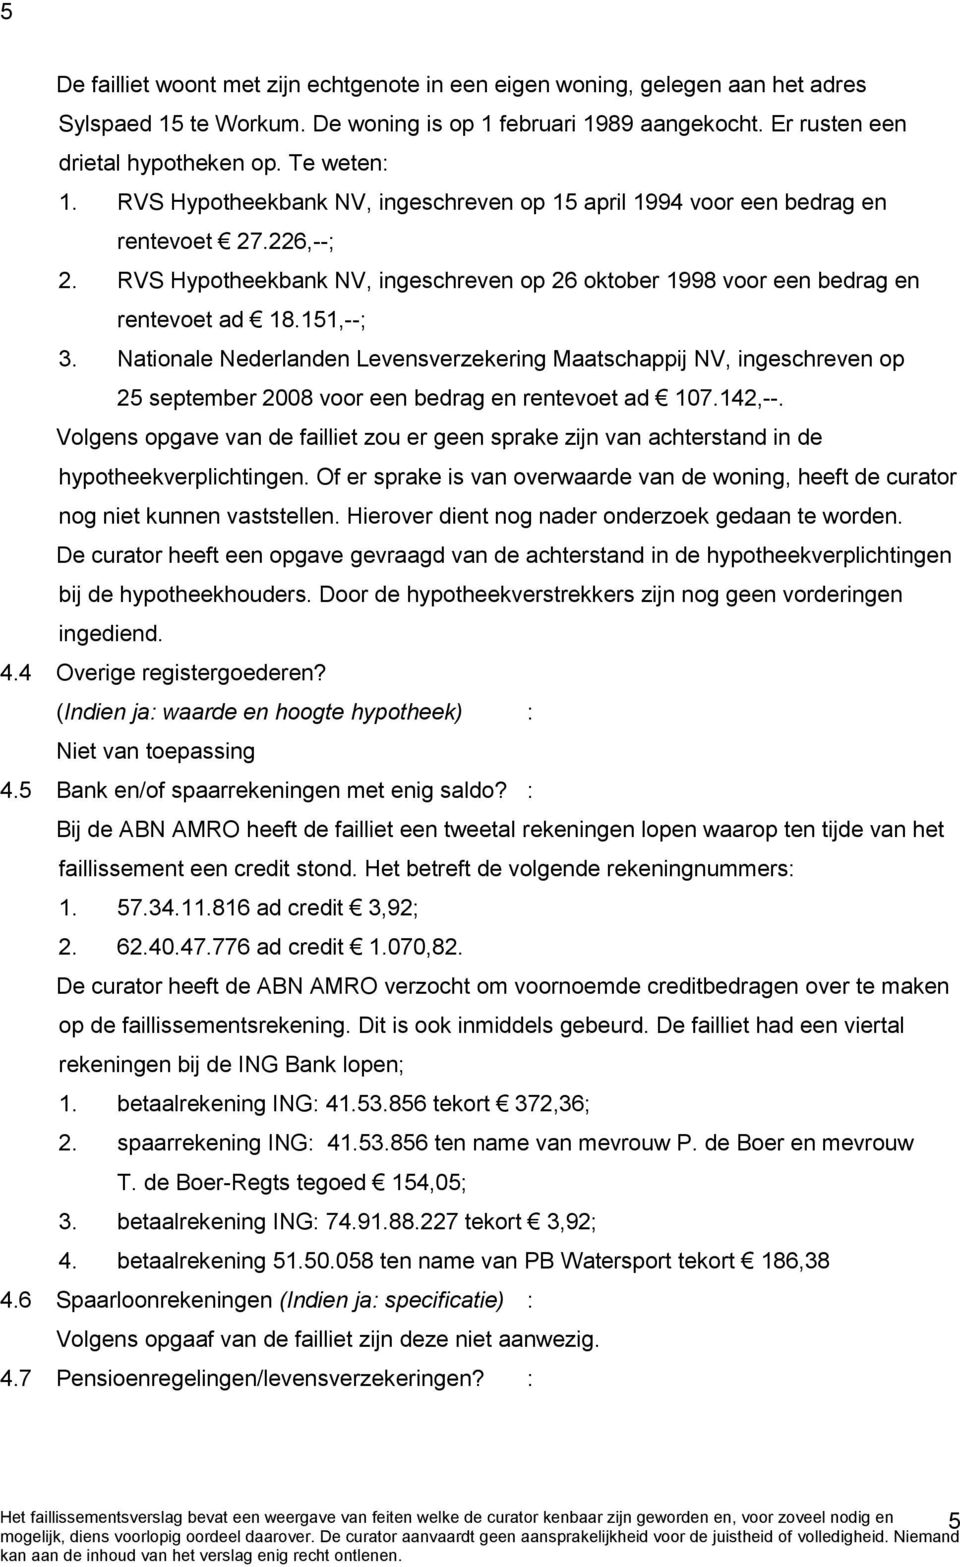 Nationale Nederlanden Levensverzekering Maatschappij NV, ingeschreven op 25 september 2008 voor een bedrag en rentevoet ad 107.142,--.